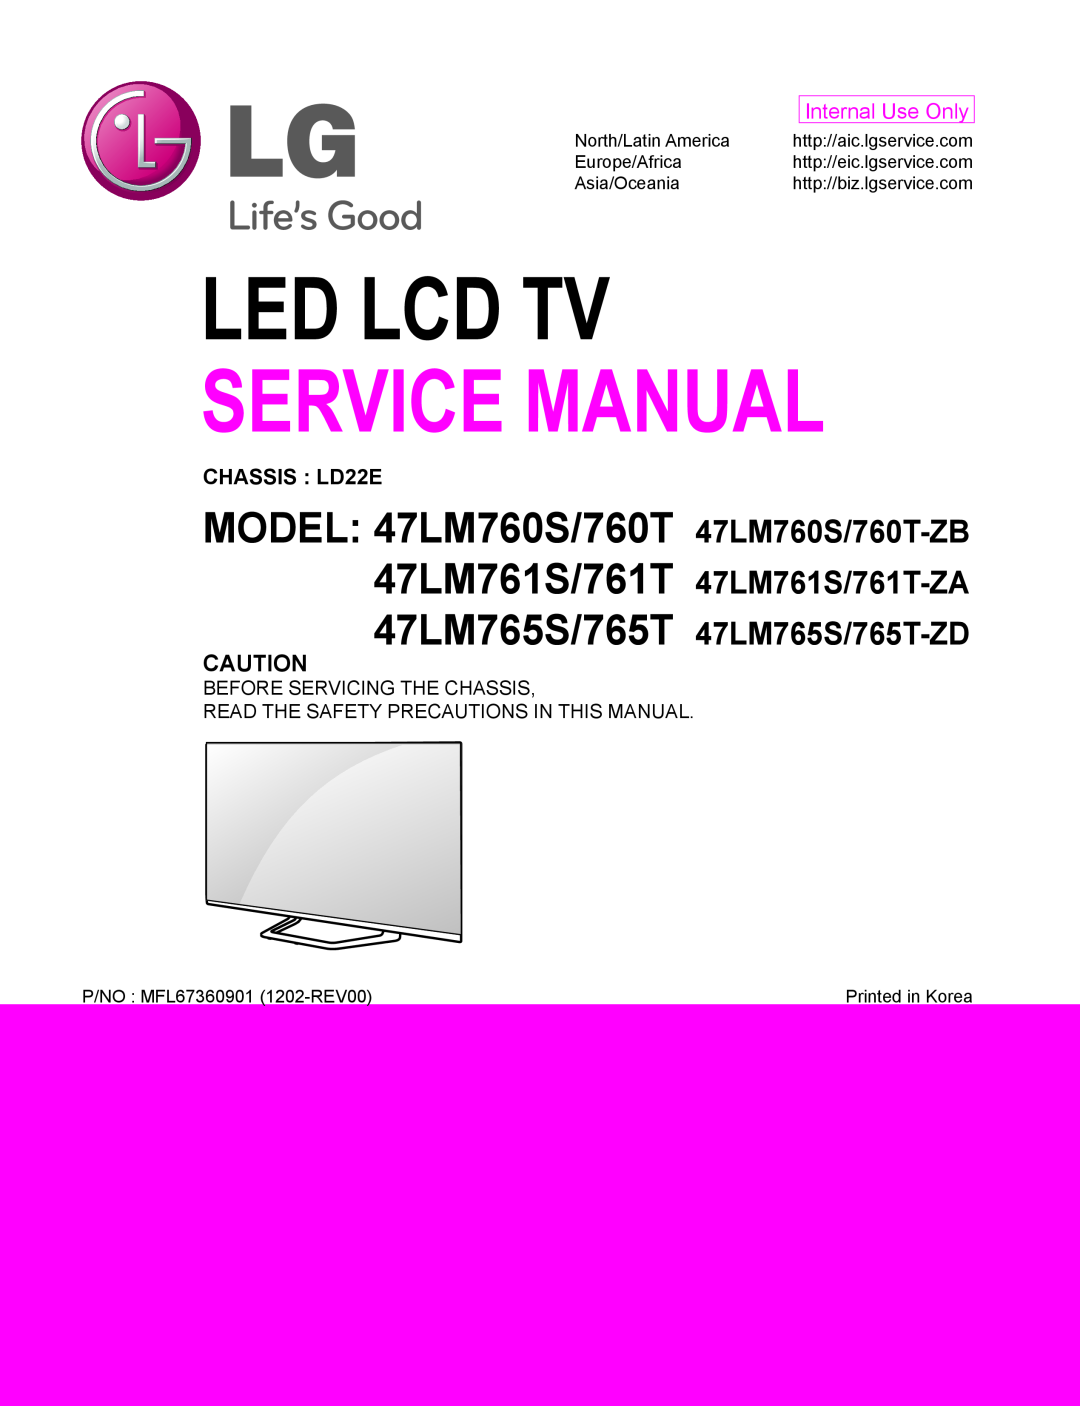 LG Electronics 47LM761S/761T-ZA service manual MODEL 47LM760S/760T 47LM760S/760T-ZB, Led Lcd Tv, Service Manual 